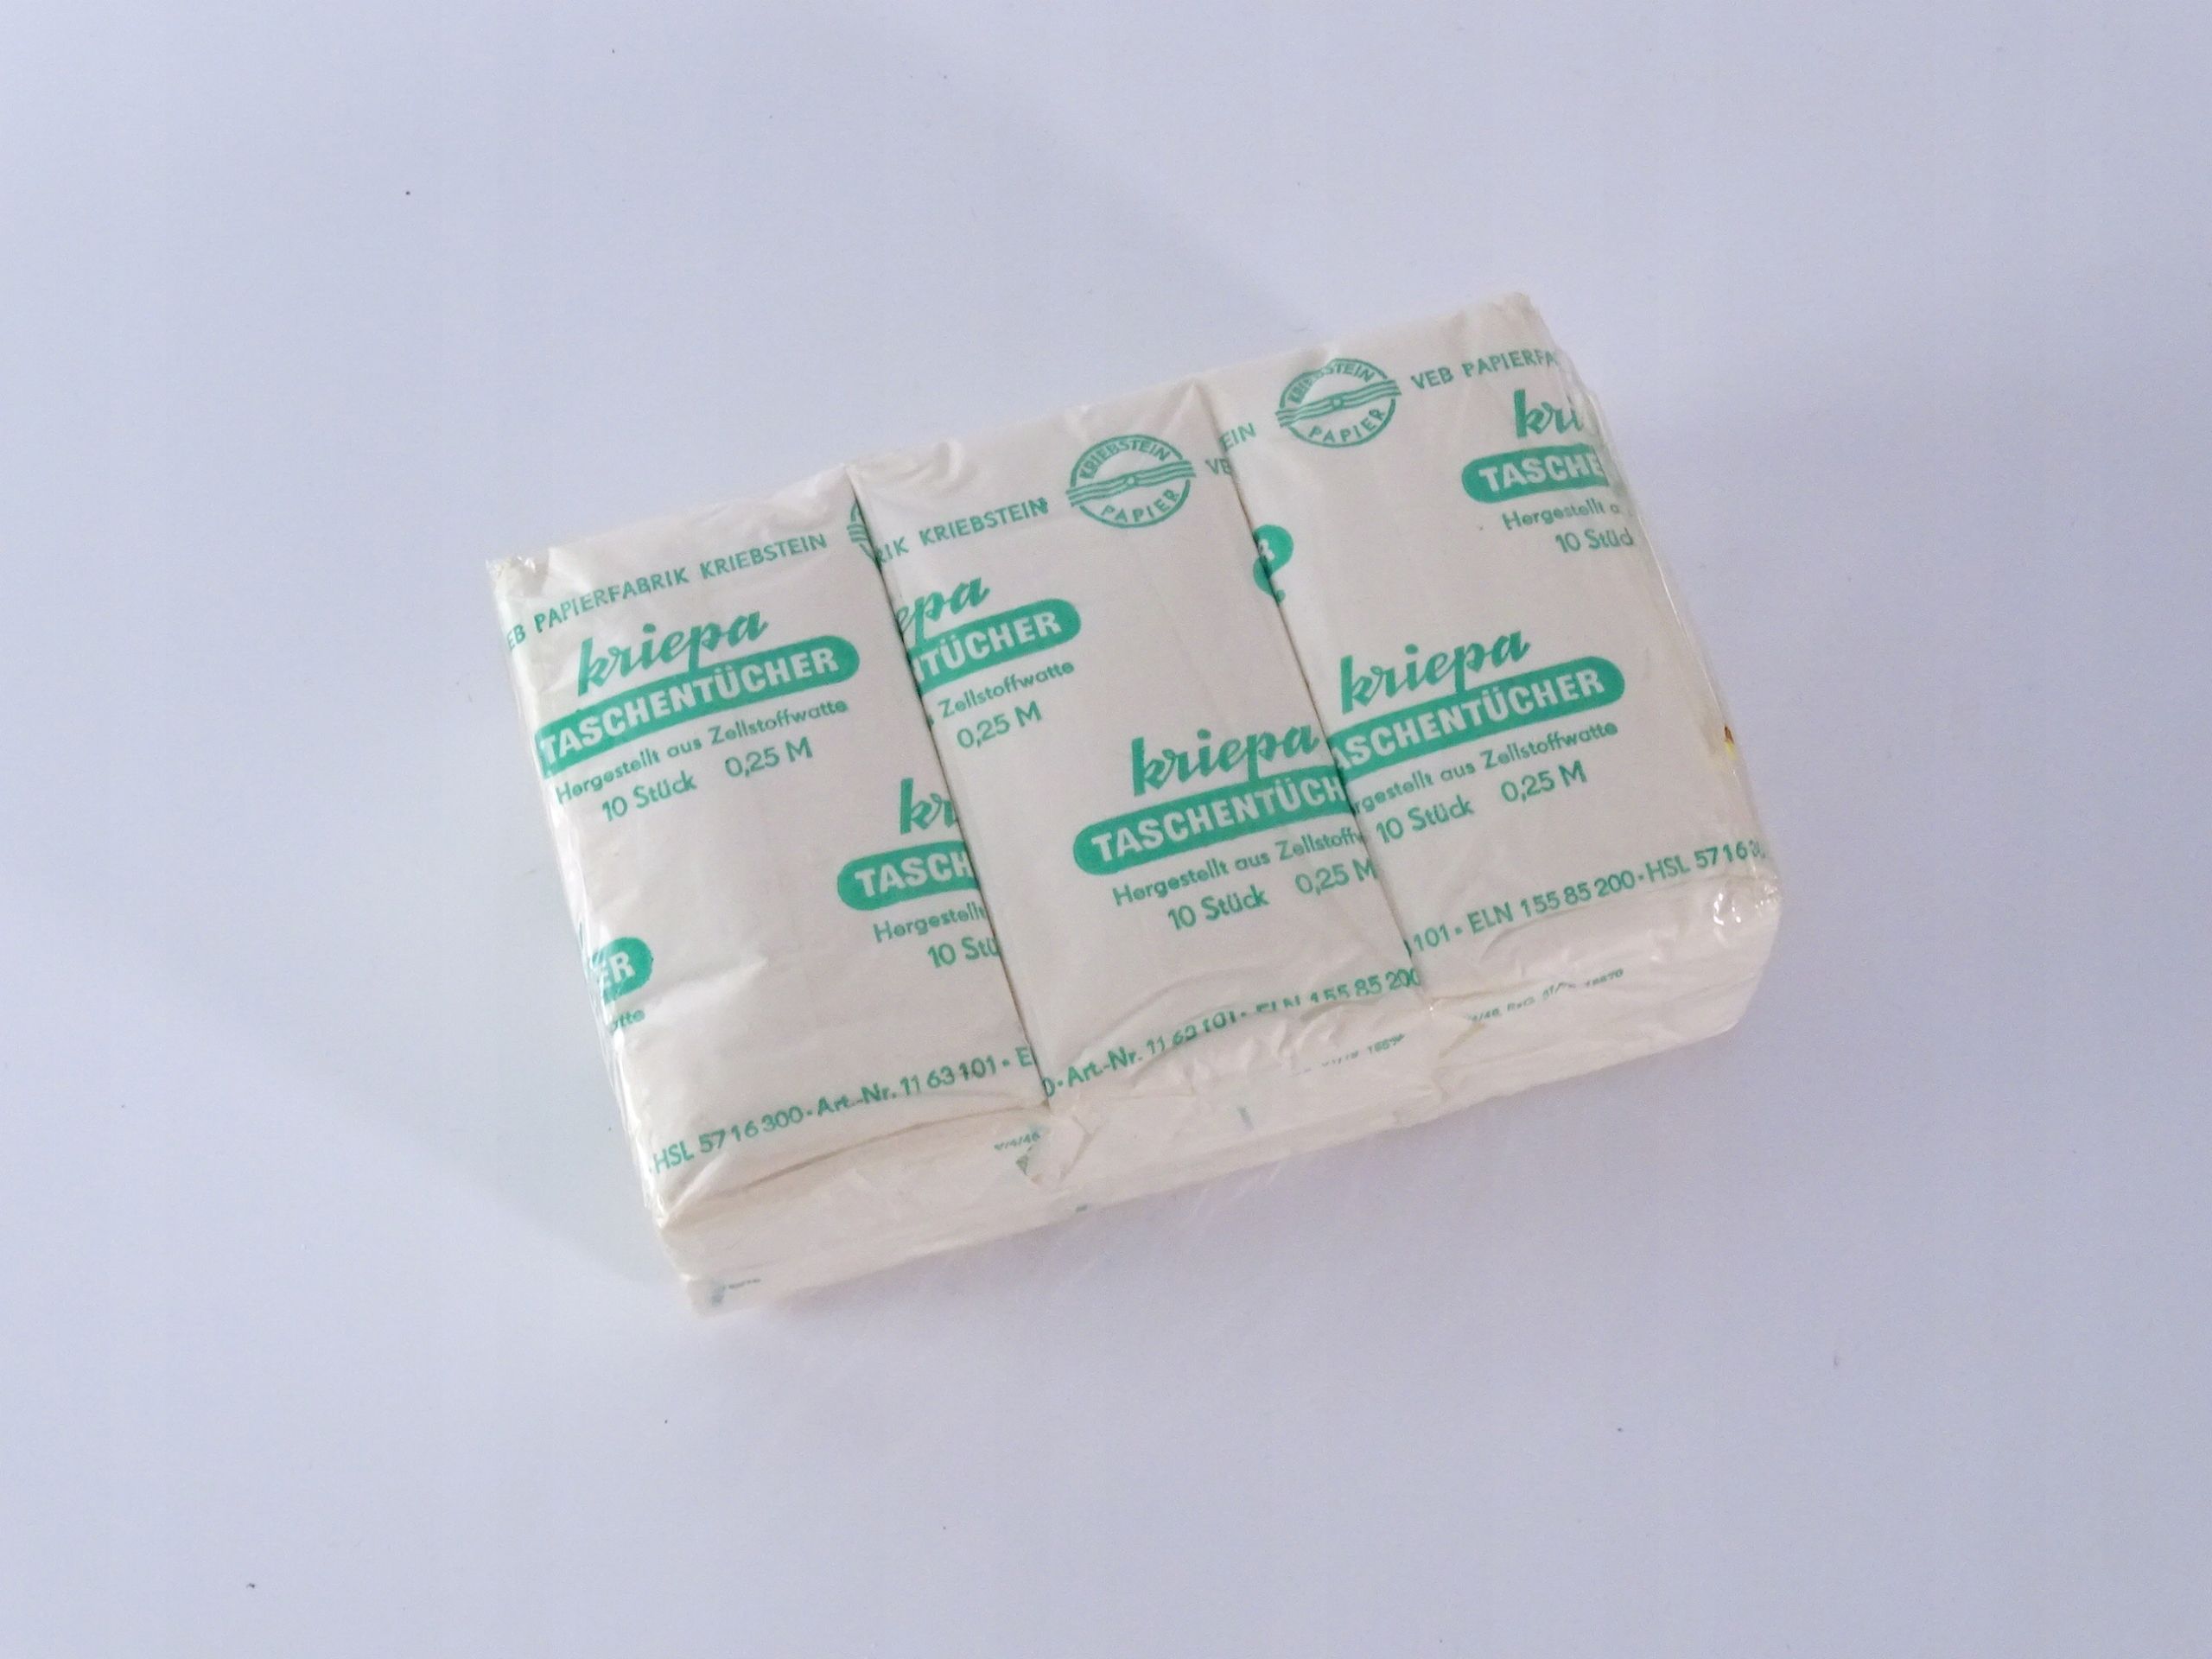 1970 oryginalnie zapakowane chusteczki kriepa ddr